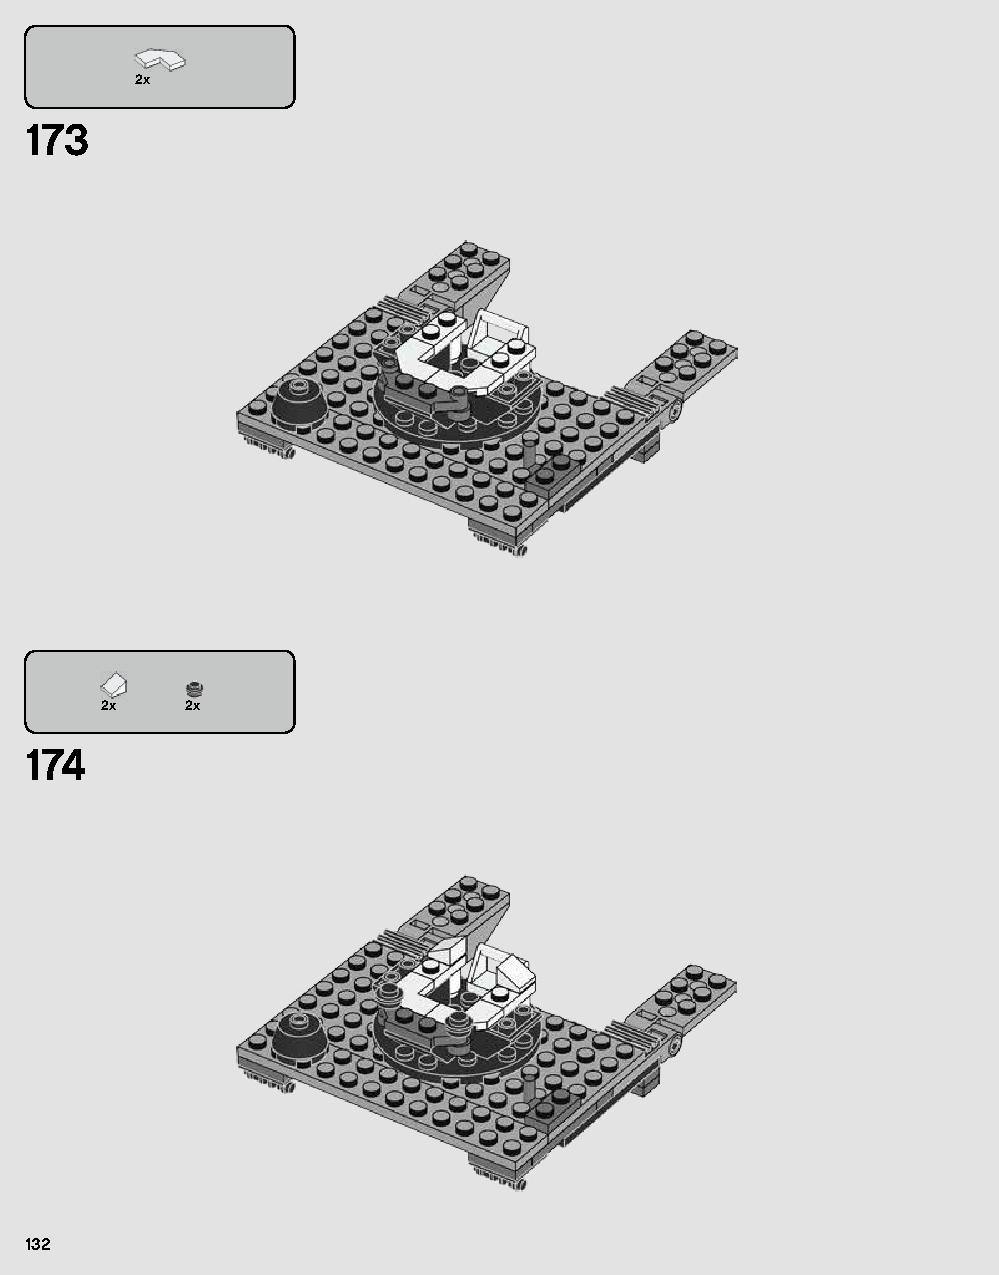 ダース・ベイダーの城 75251 レゴの商品情報 レゴの説明書・組立方法 132 page